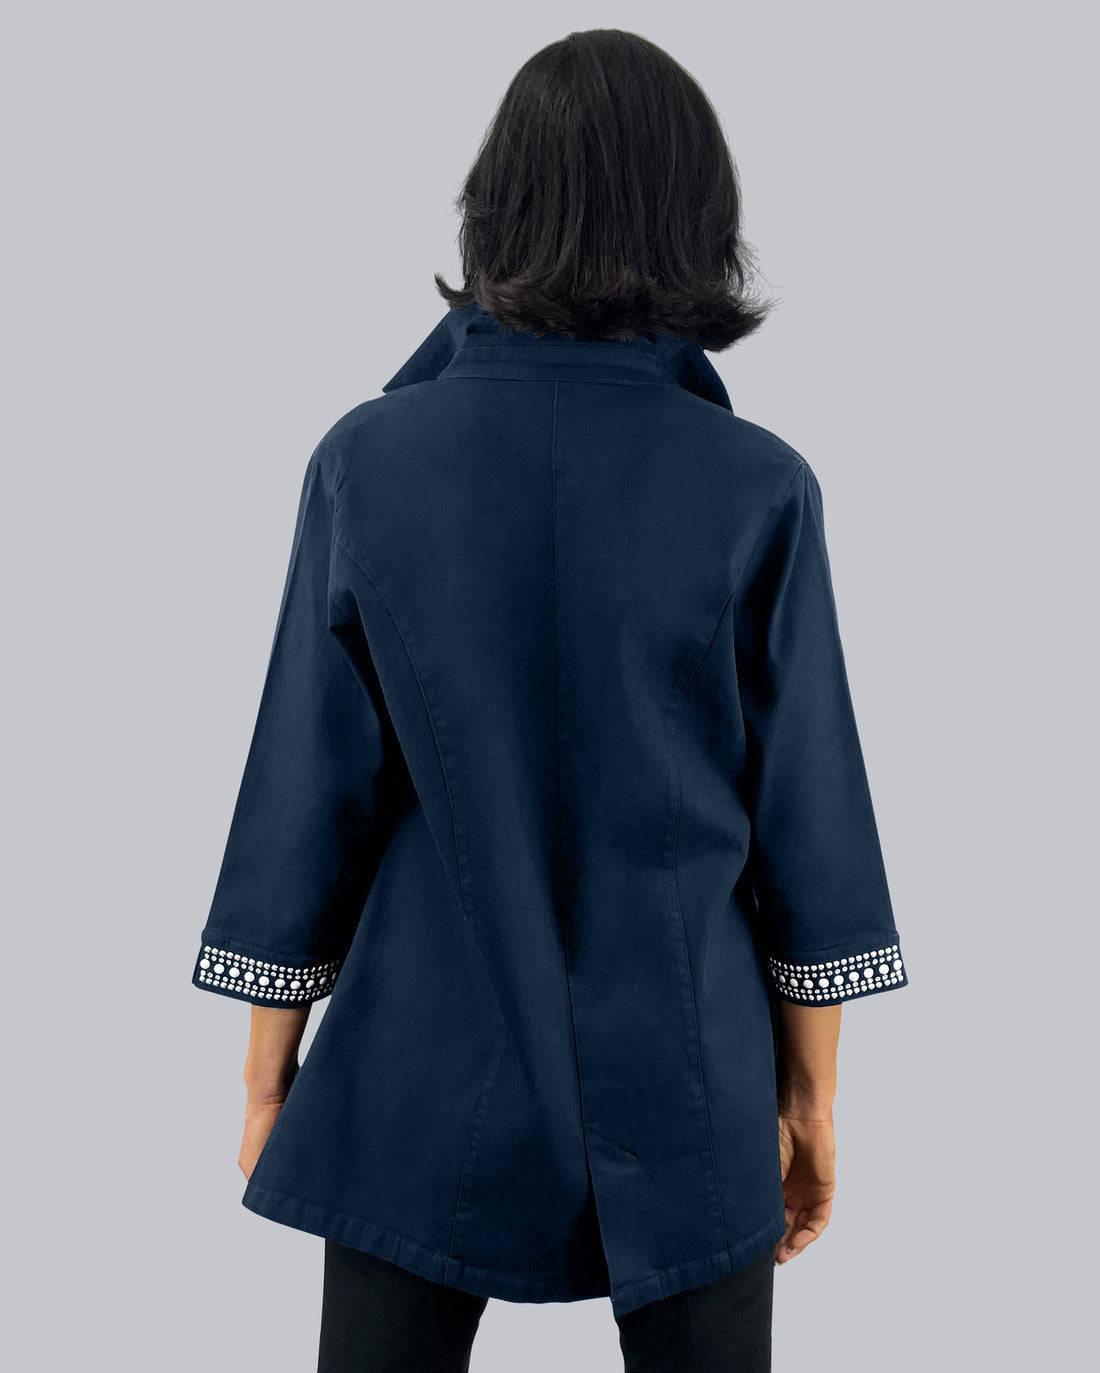 Black Denim Swing Jacket w/ Embellished Details